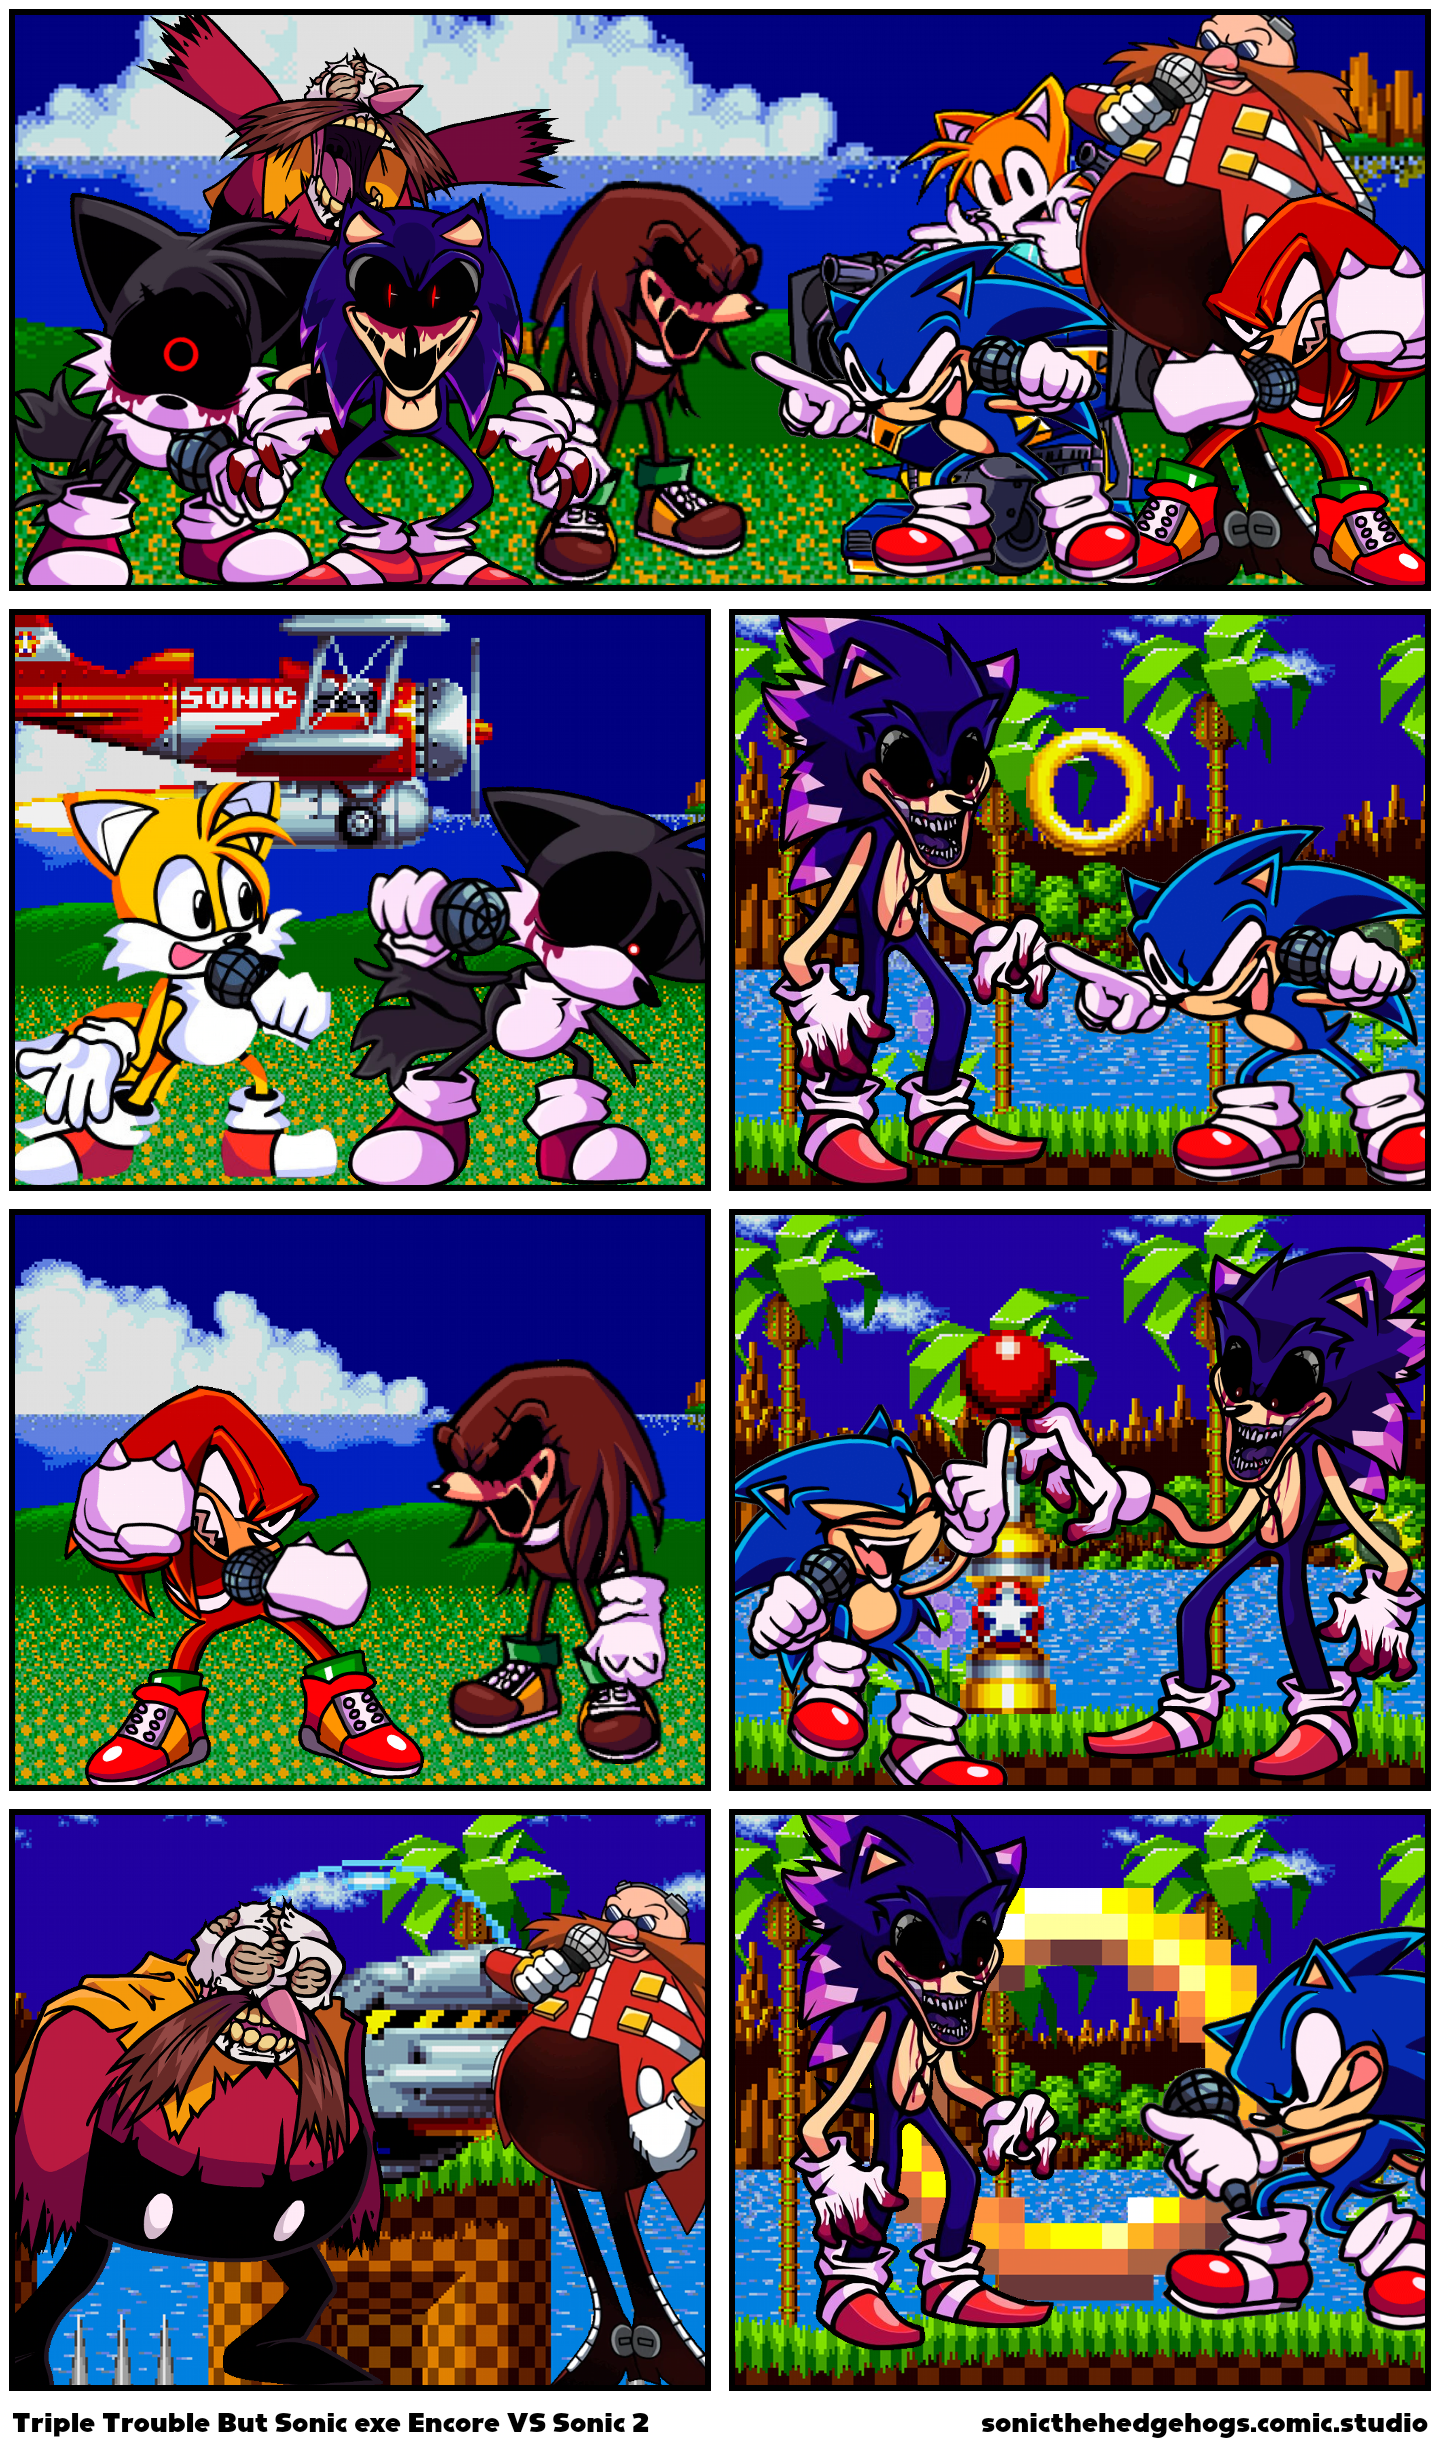 Triple Trouble But Sonic exe Encore VS Sonic 2